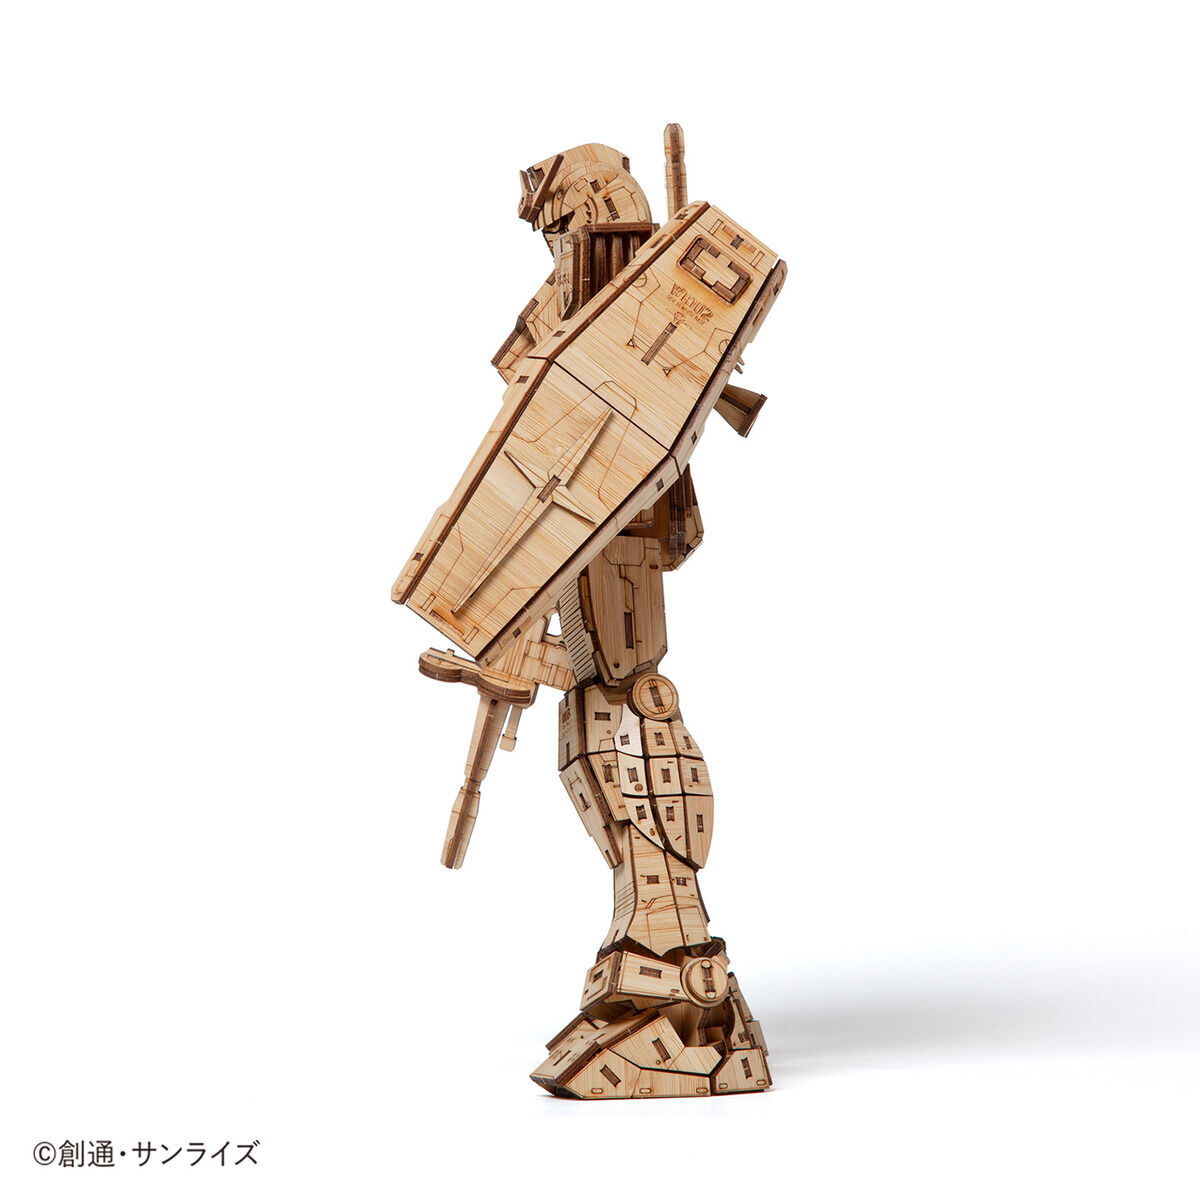 Bamboo Art wa-gu-mi RX-78-2 Gundam